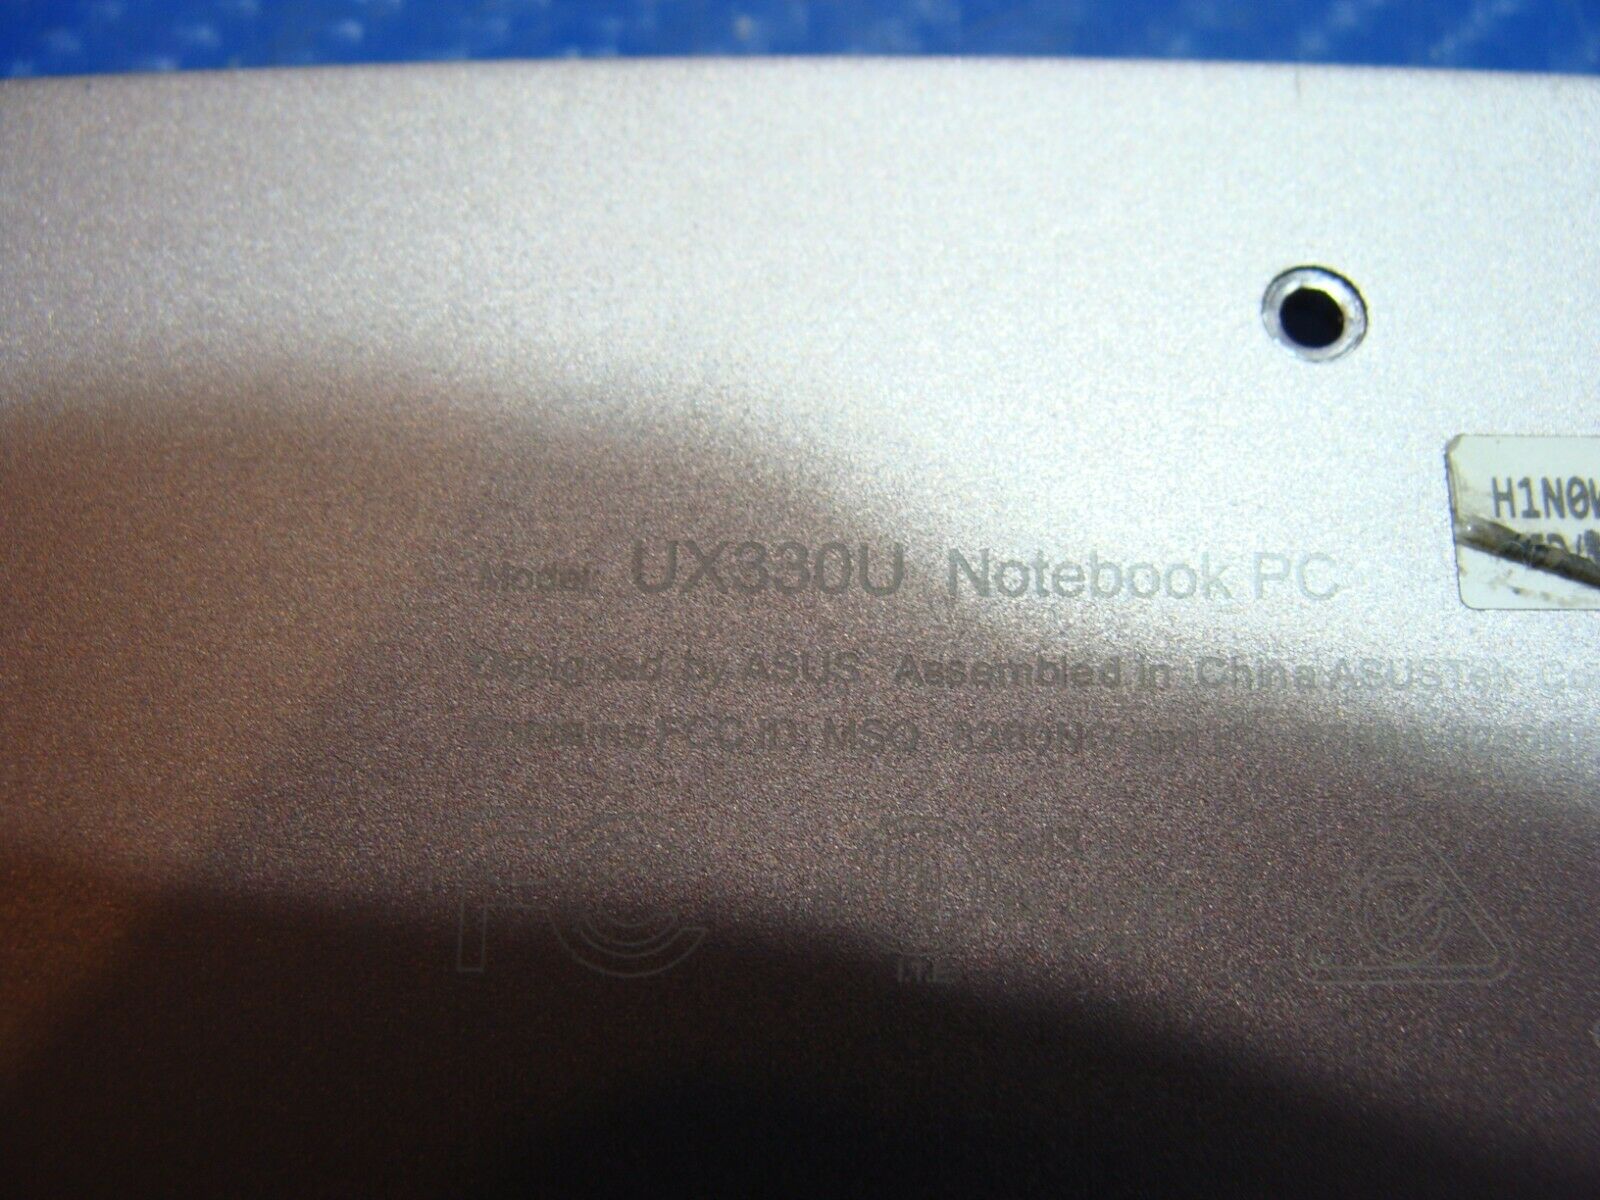 Asus ZenBook UX330U 13.3